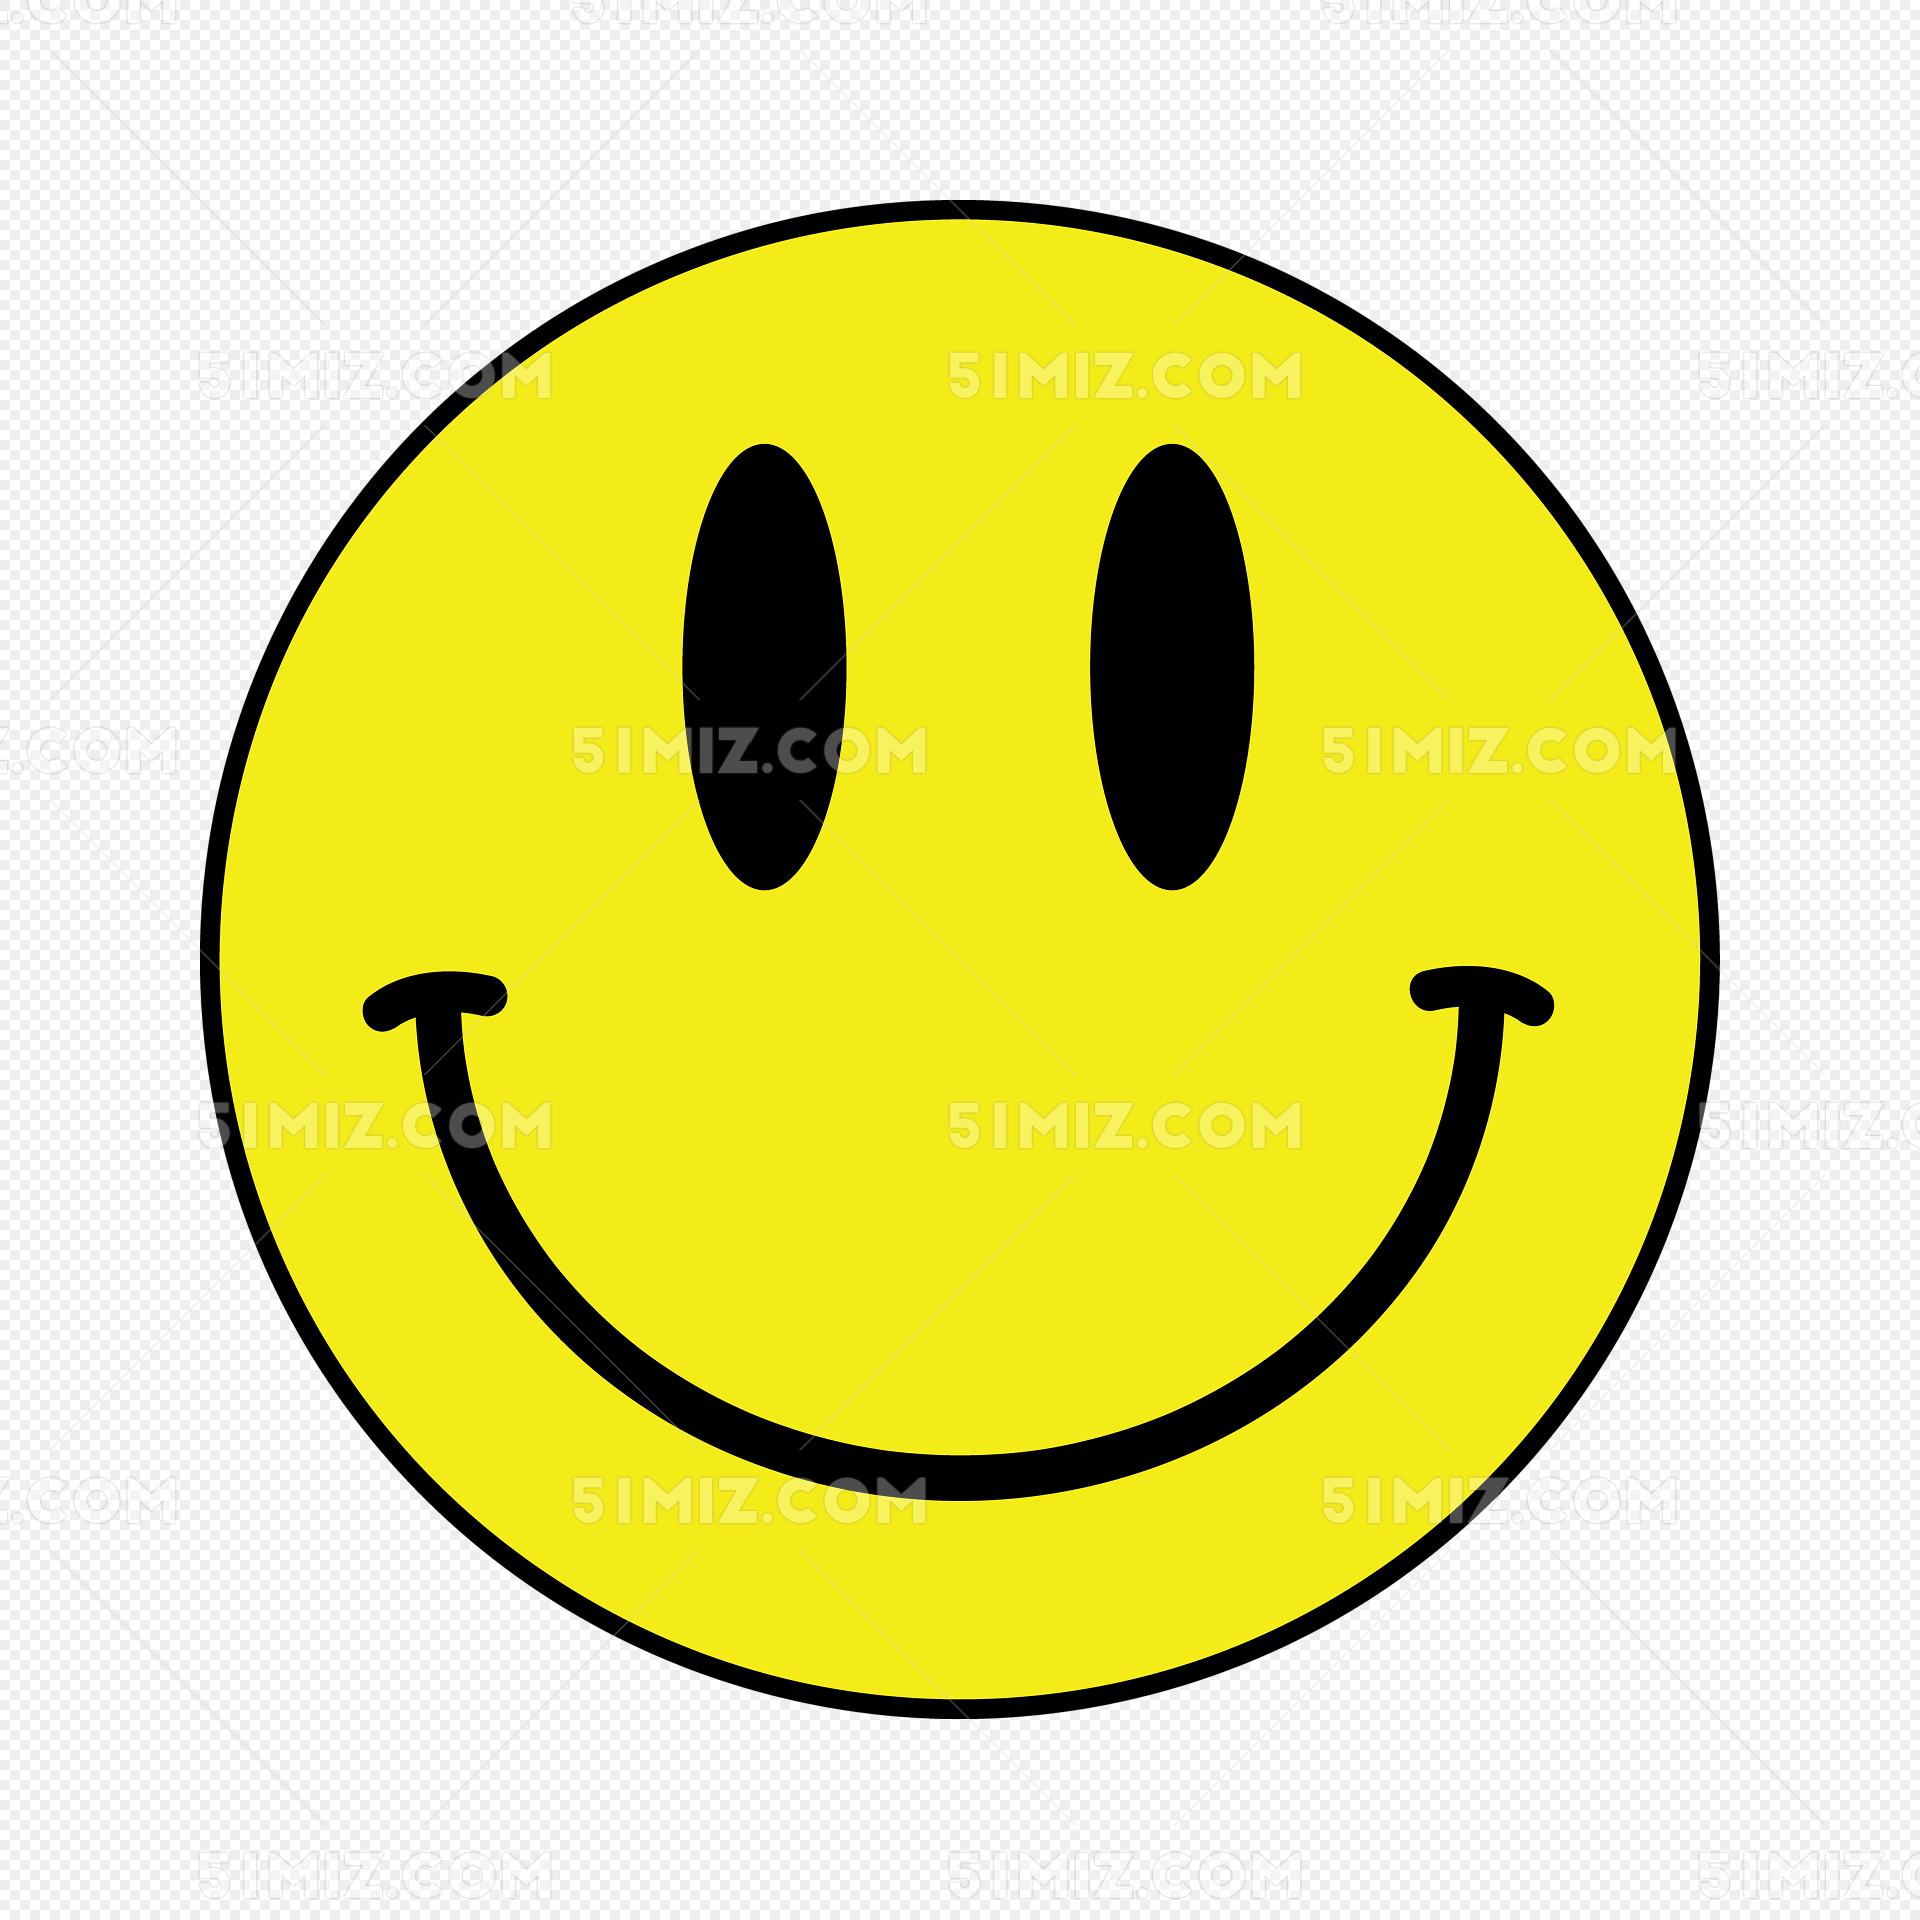 黄色可爱笑脸表情图片素材免费下载 - 觅知网